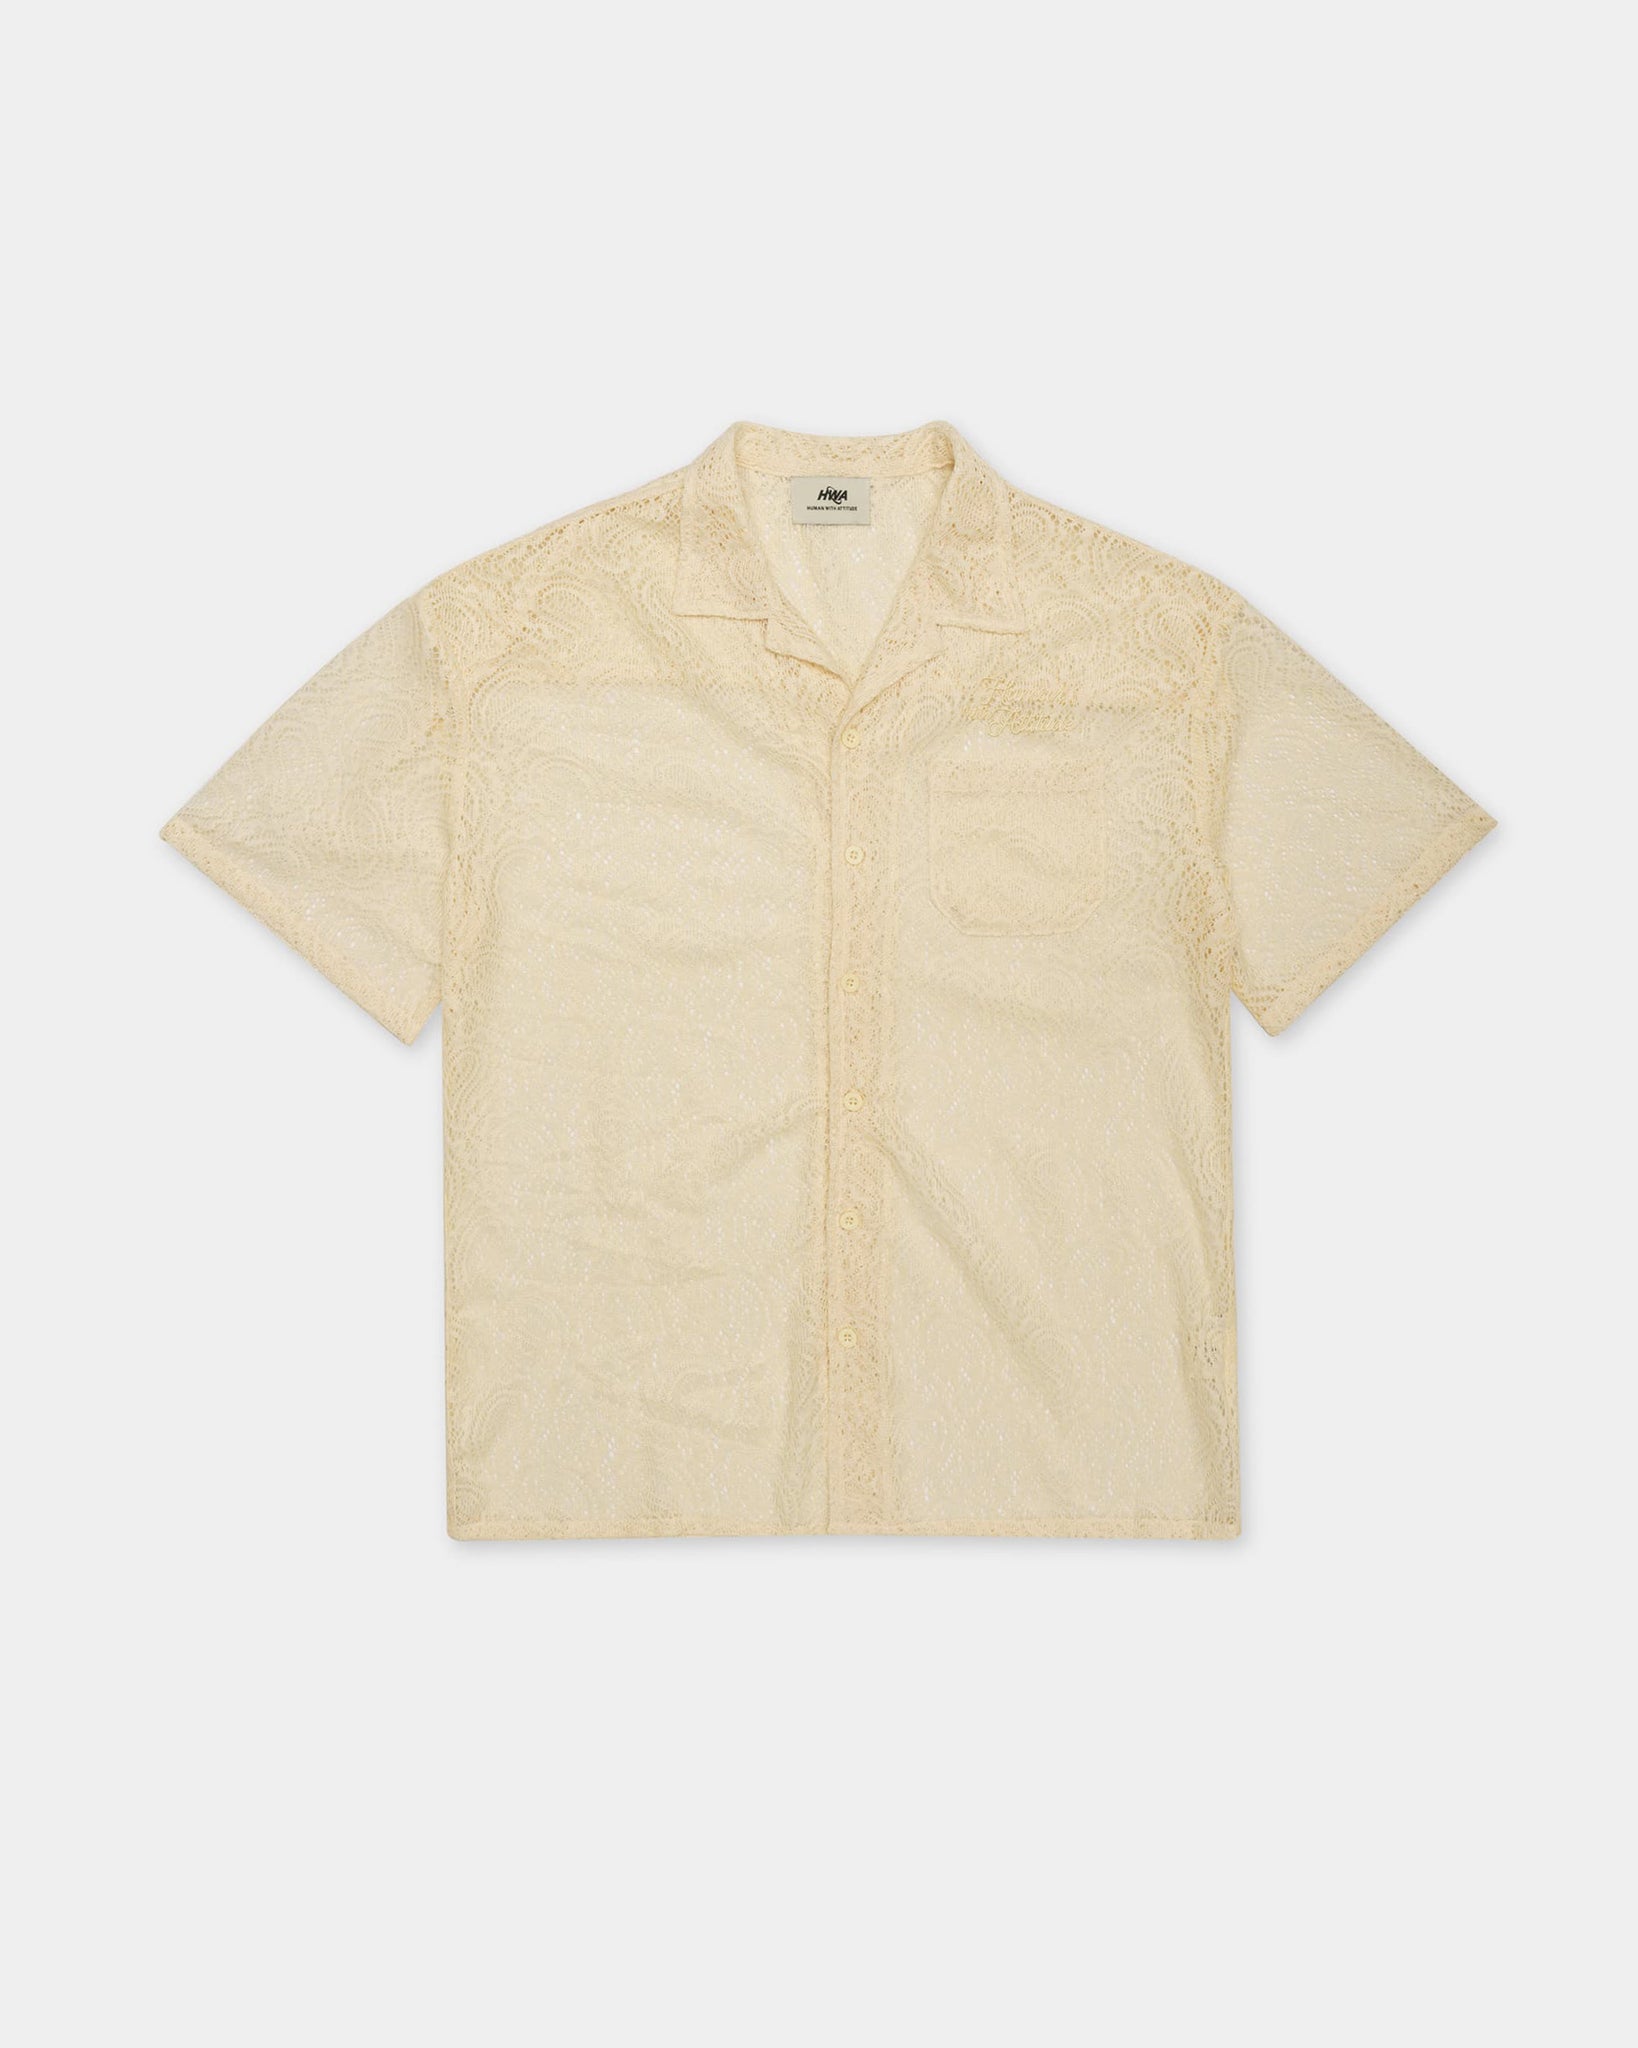 Cuban Lace Shirt - Vanilla